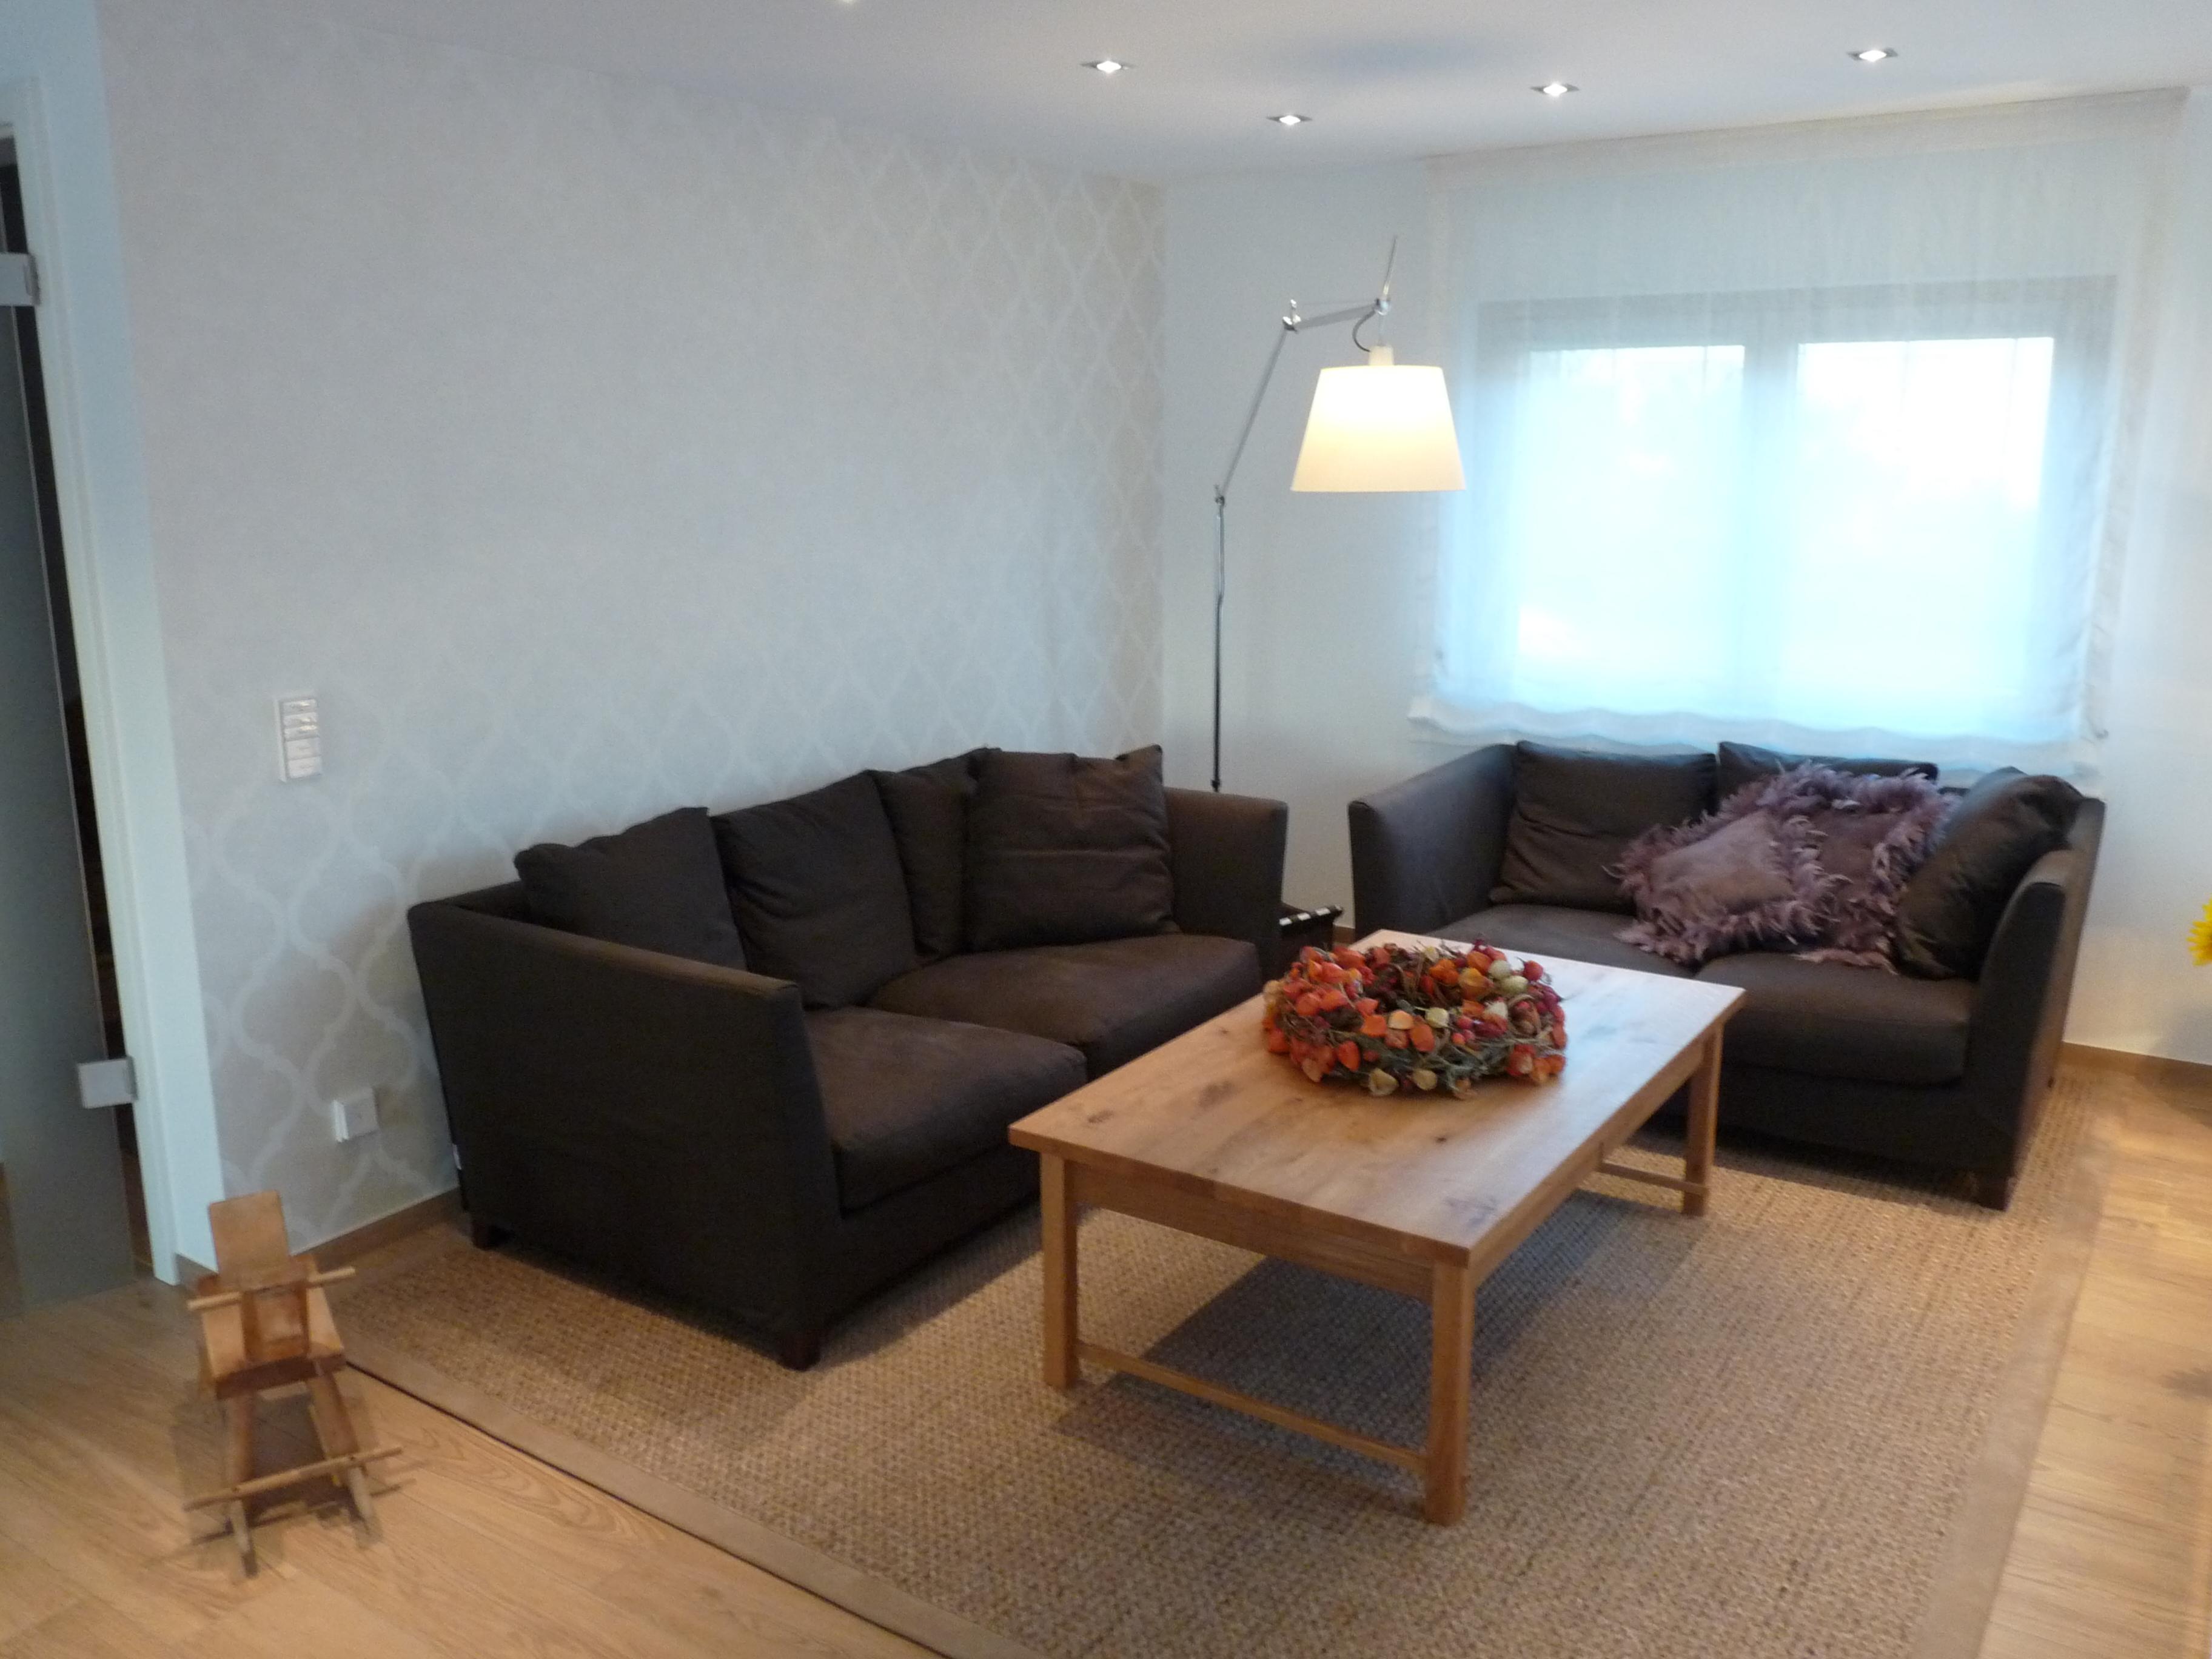 Tapete im Wohnzimmer #couchtisch #sofa #mustertapete #braunessofa ©Bieser Raumausstattung